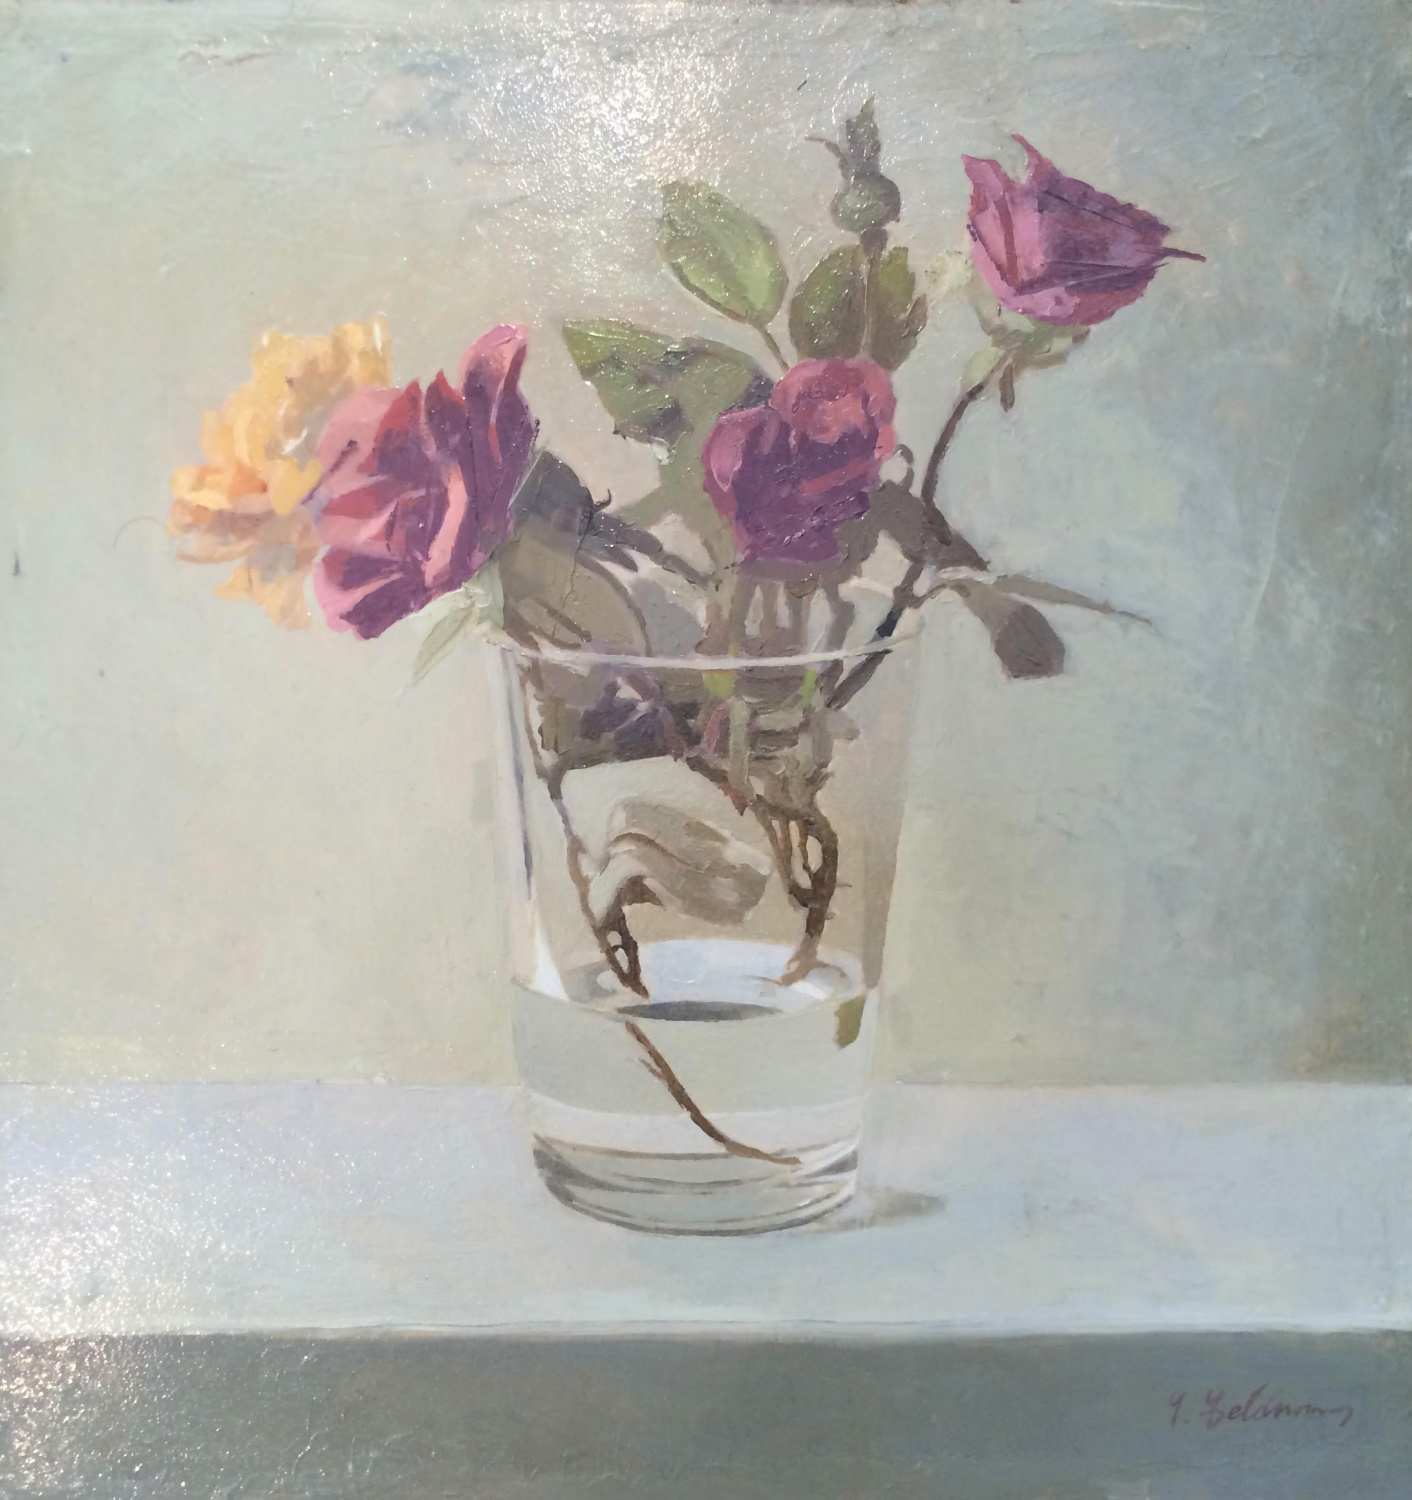 “Roses in a glass” by Yaakov Feldman